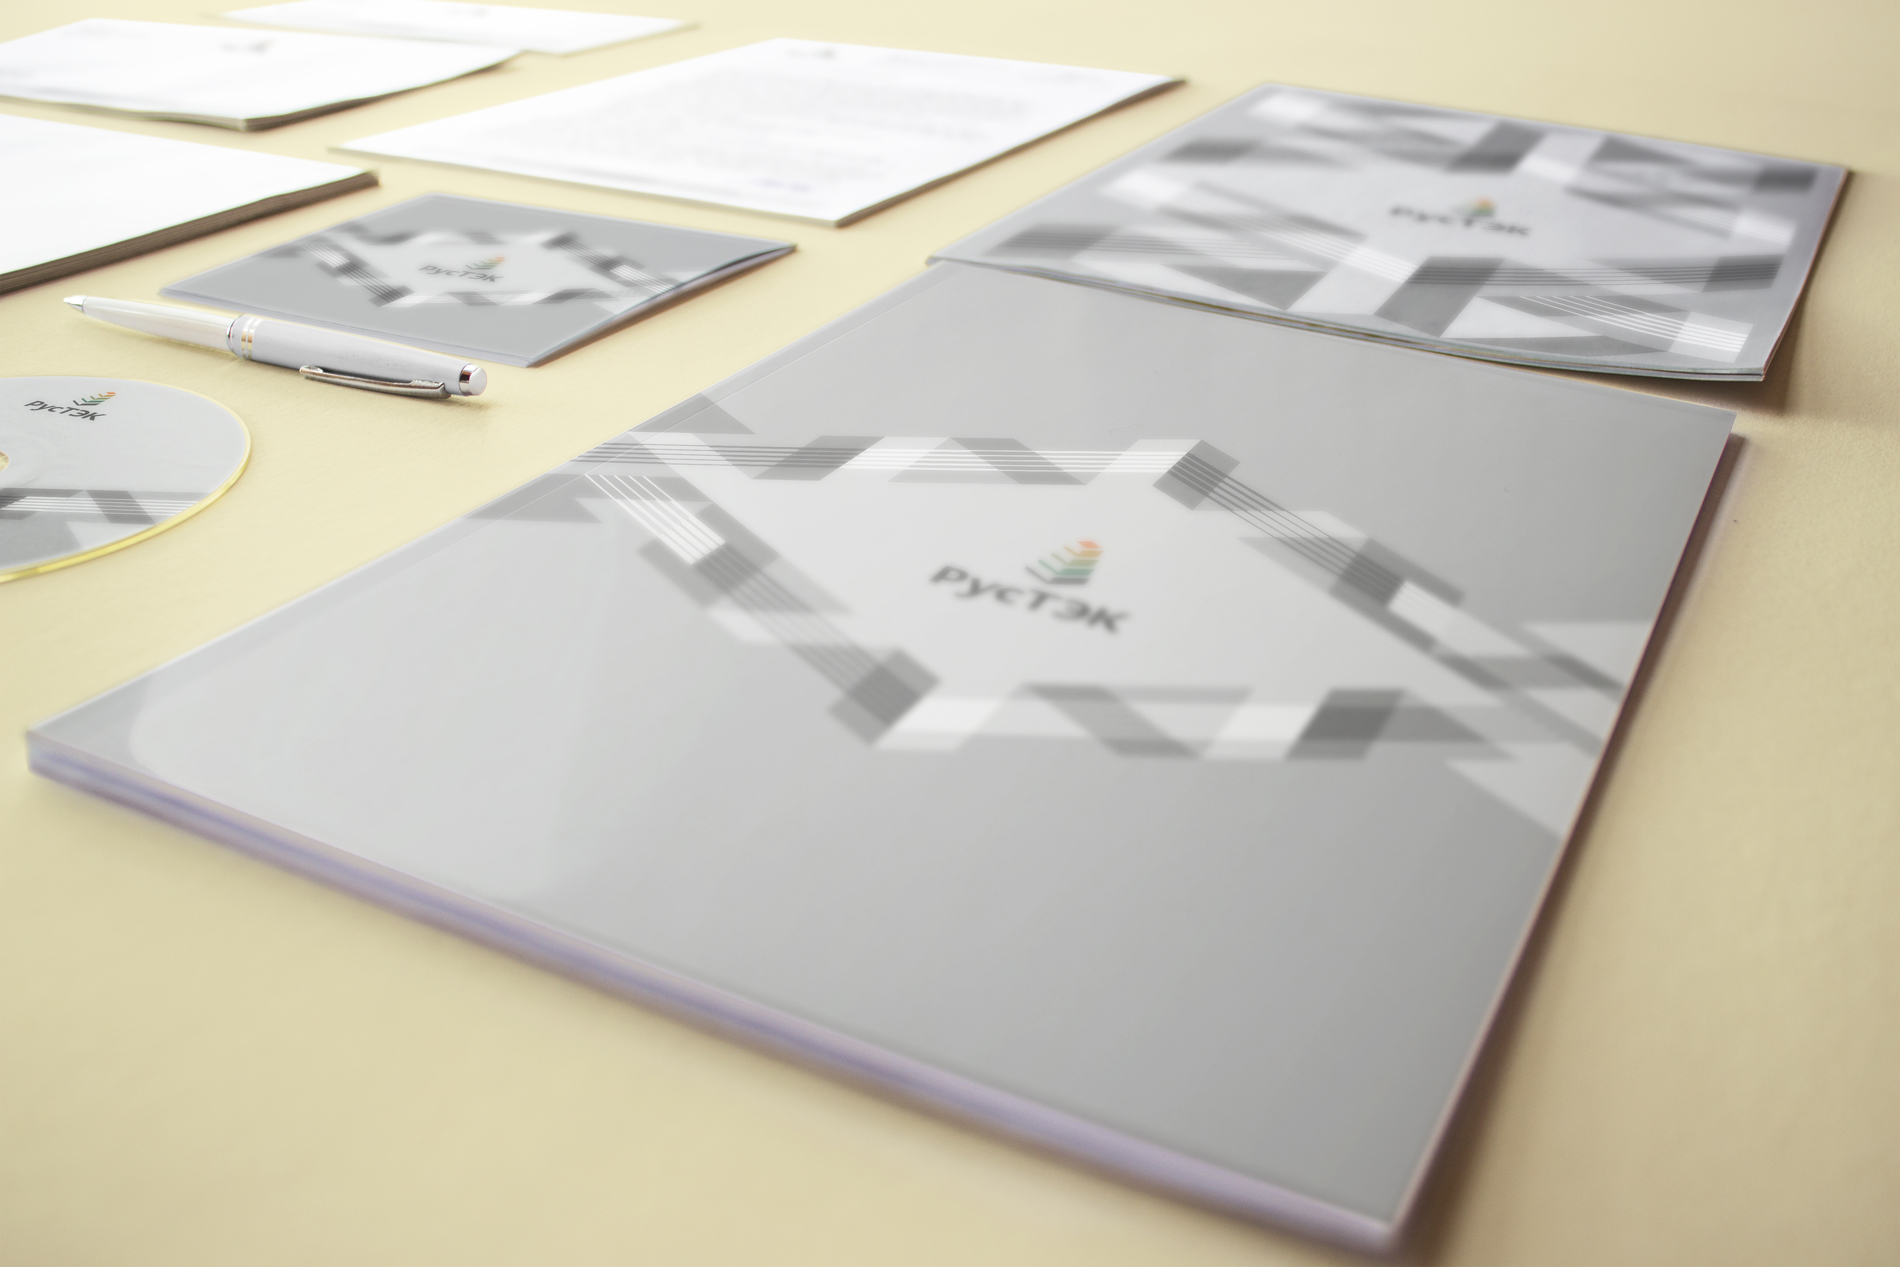 Брендинг для топливно-энергетической компании «РусТЭК»: логотип, разработка фирменного стиля, брендбук.